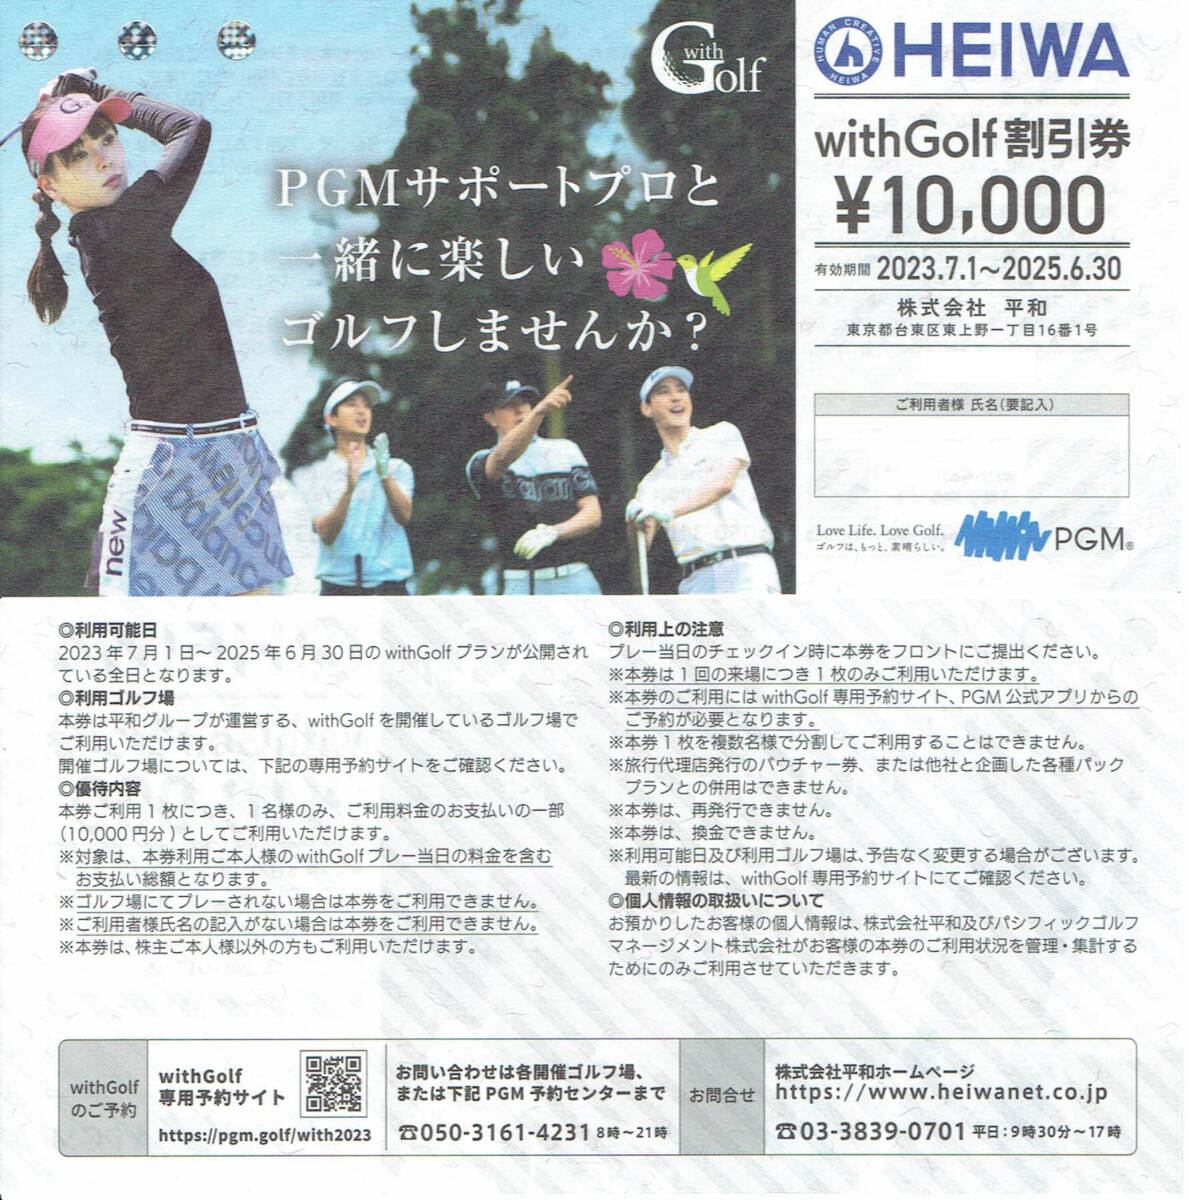  flat мир HEIWA PGM акционер пригласительный билет with Golf льготный билет 10000 иен талон ×1 листов [ иметь временные ограничения действия 2025 год 6 месяц 30 день ]Cool Cart бесплатный талон ×1 листов [ иметь временные ограничения действия 2024 год 6 месяц 30 день ]